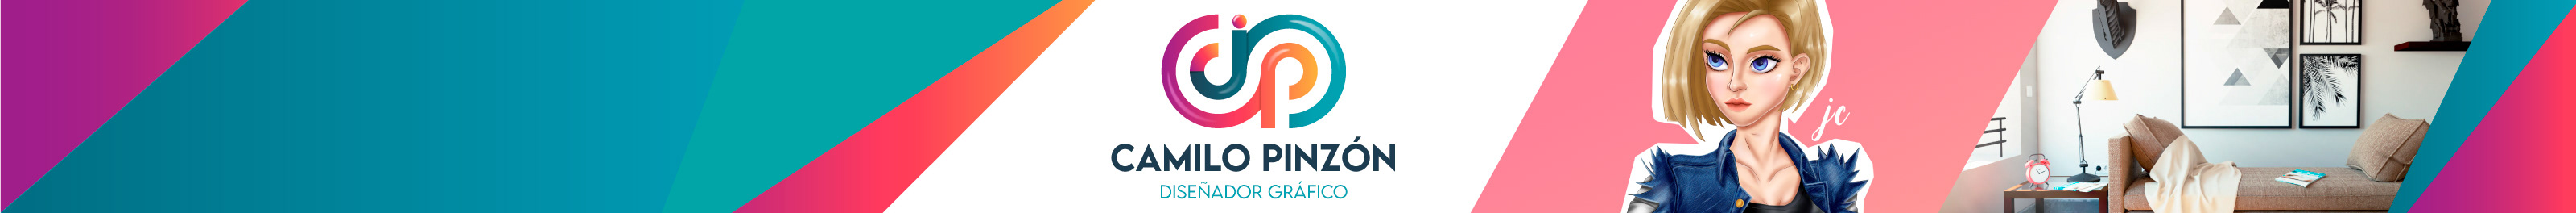 Juan camilo Pinzón Cantor's profile banner